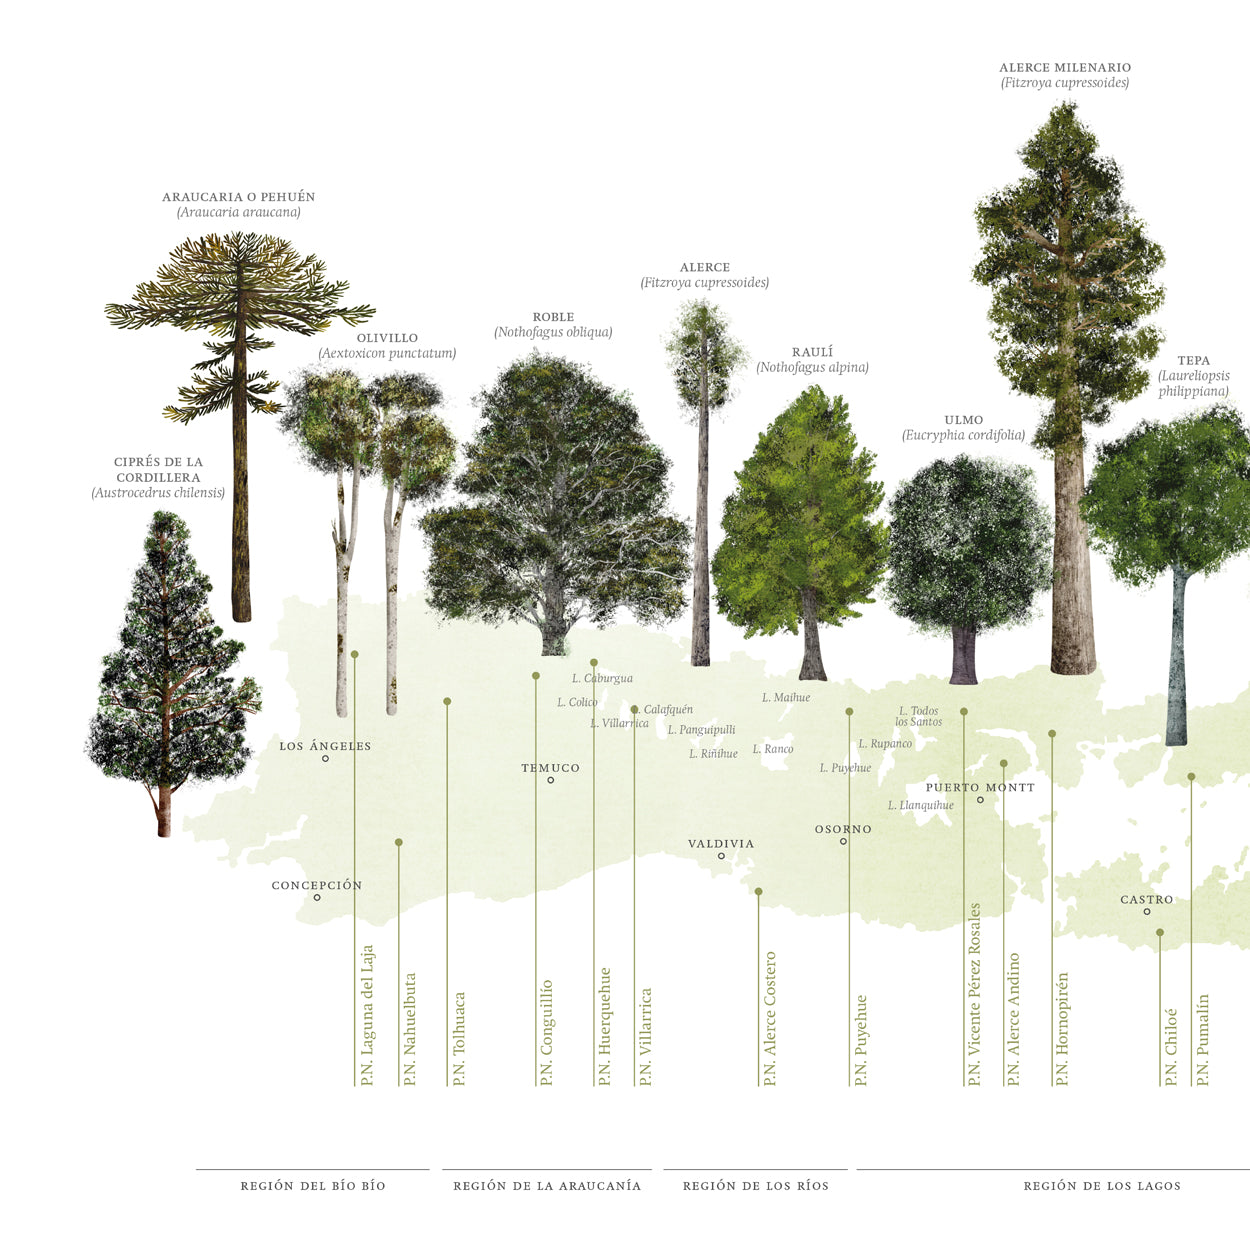 Mapa árboles nativos del sur de Chile